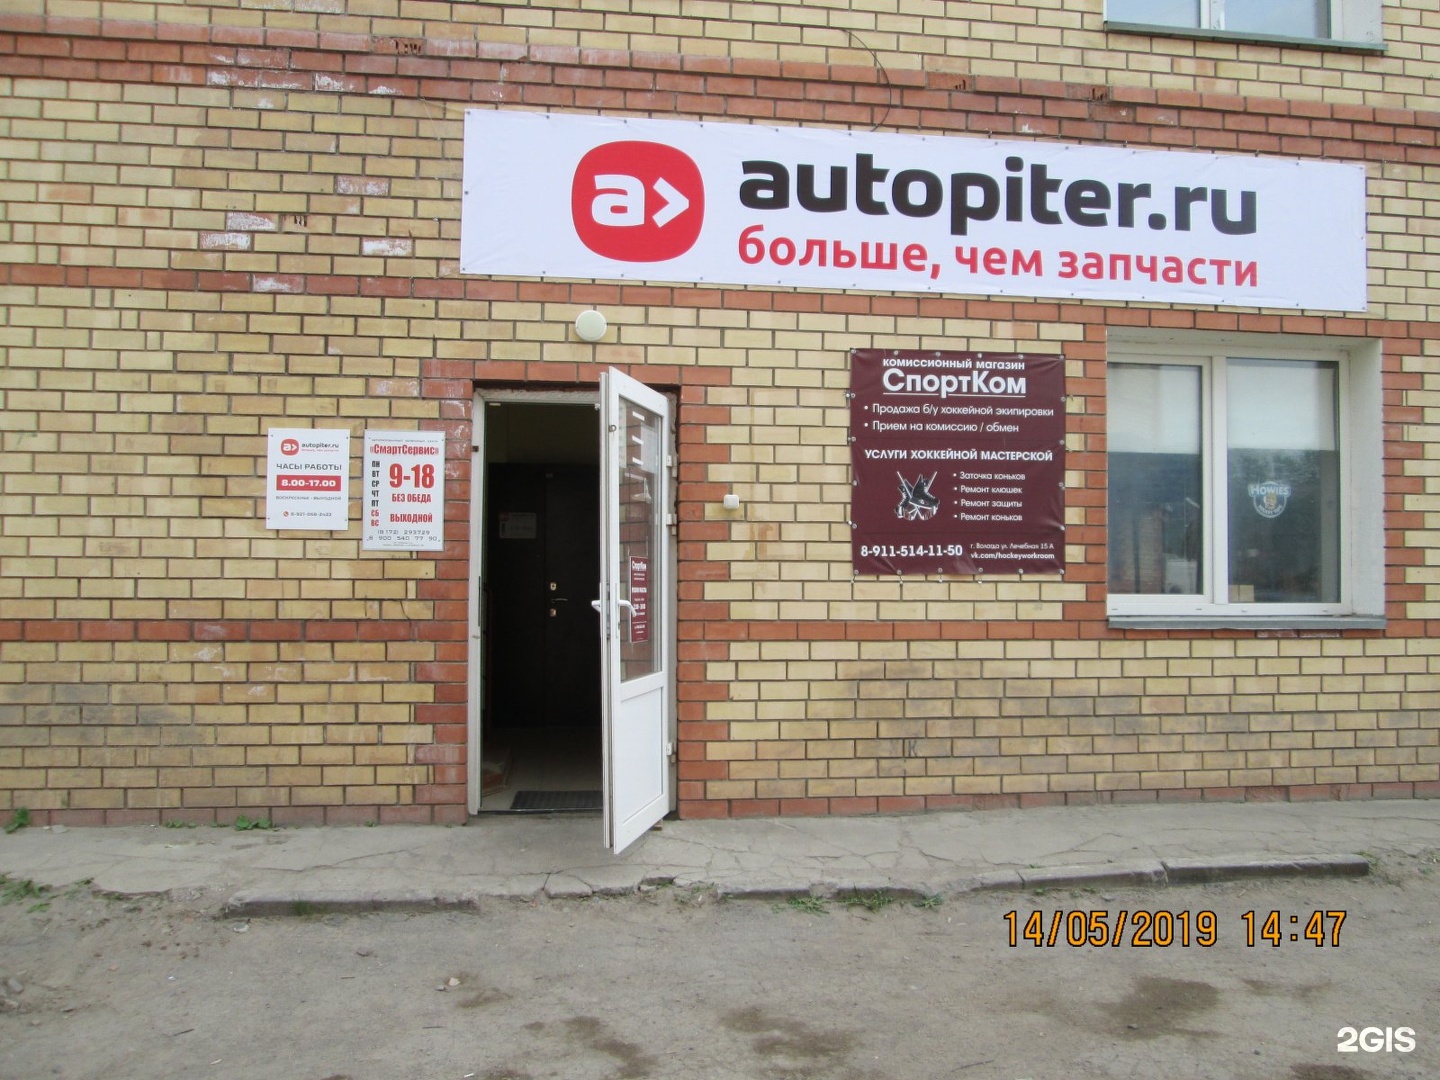 Автопитер Интернет Магазин Курск